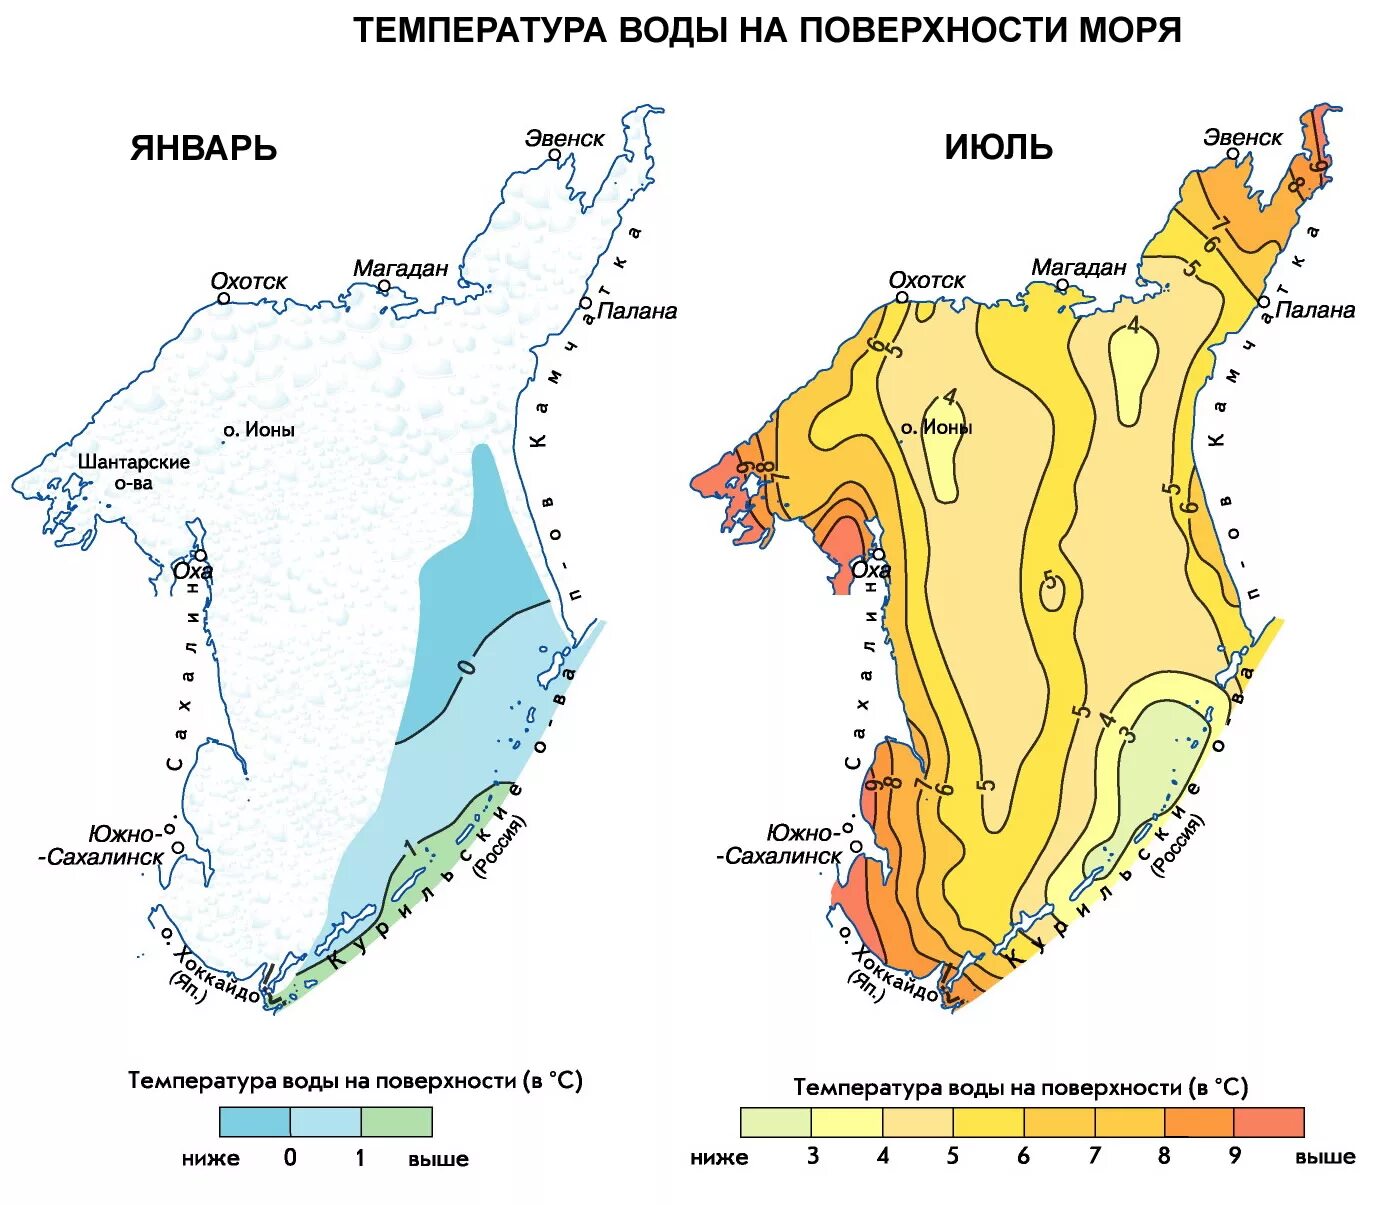 К каким морям относится охотское море. Карта температуры Охотского моря. Температурная карта Охотского моря. Температурный режим Охотского моря. Солёность Охотского моря в промилле.